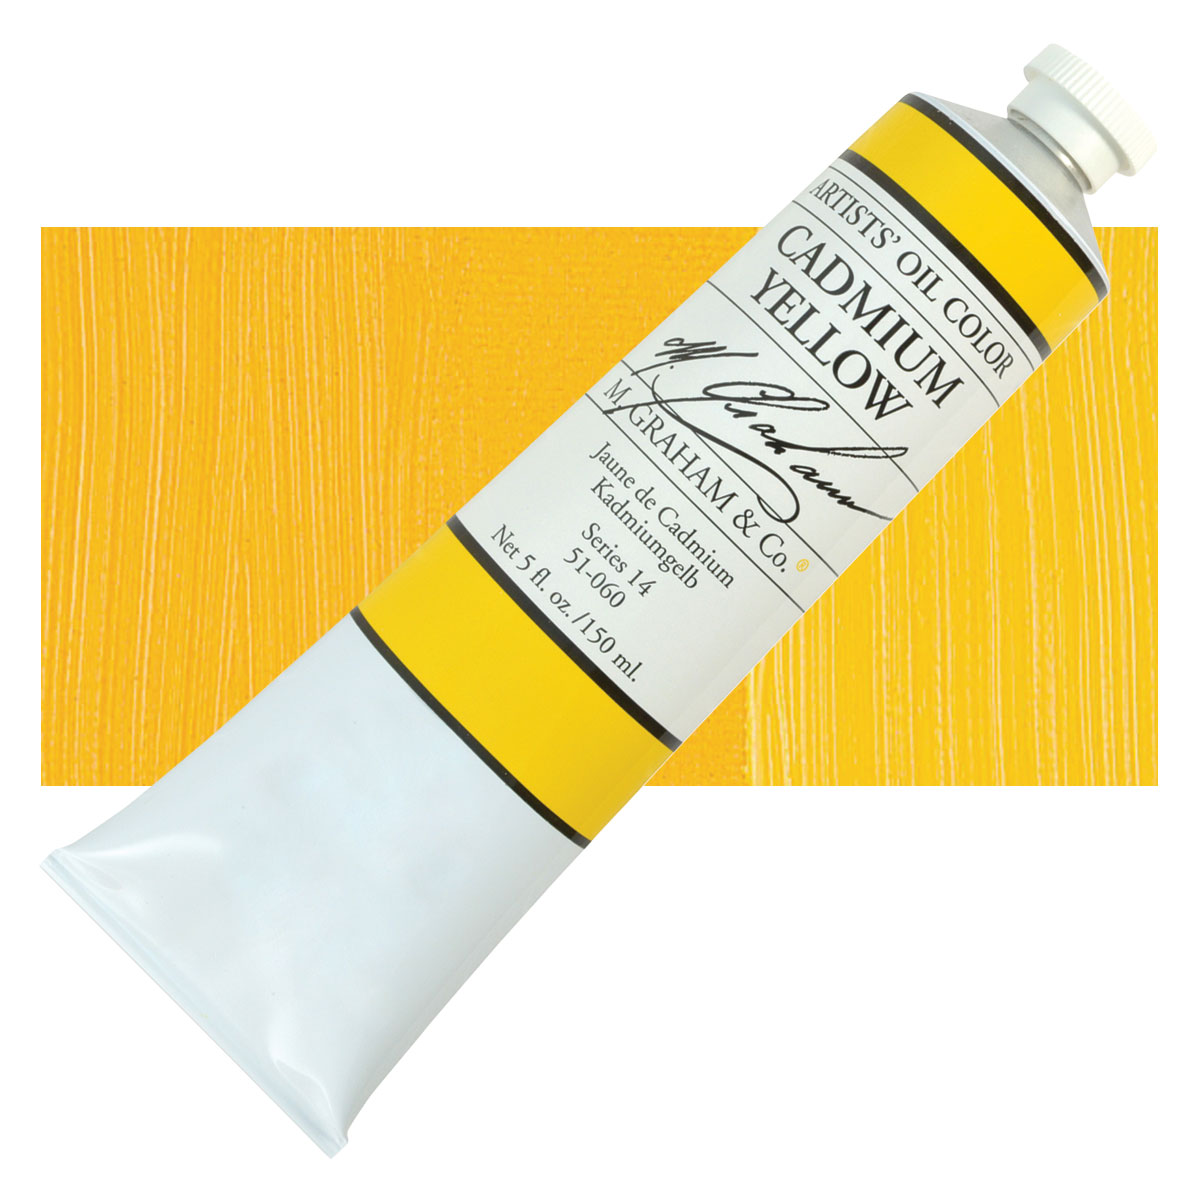 M. Graham Oil Color - Titanium White 150 ml